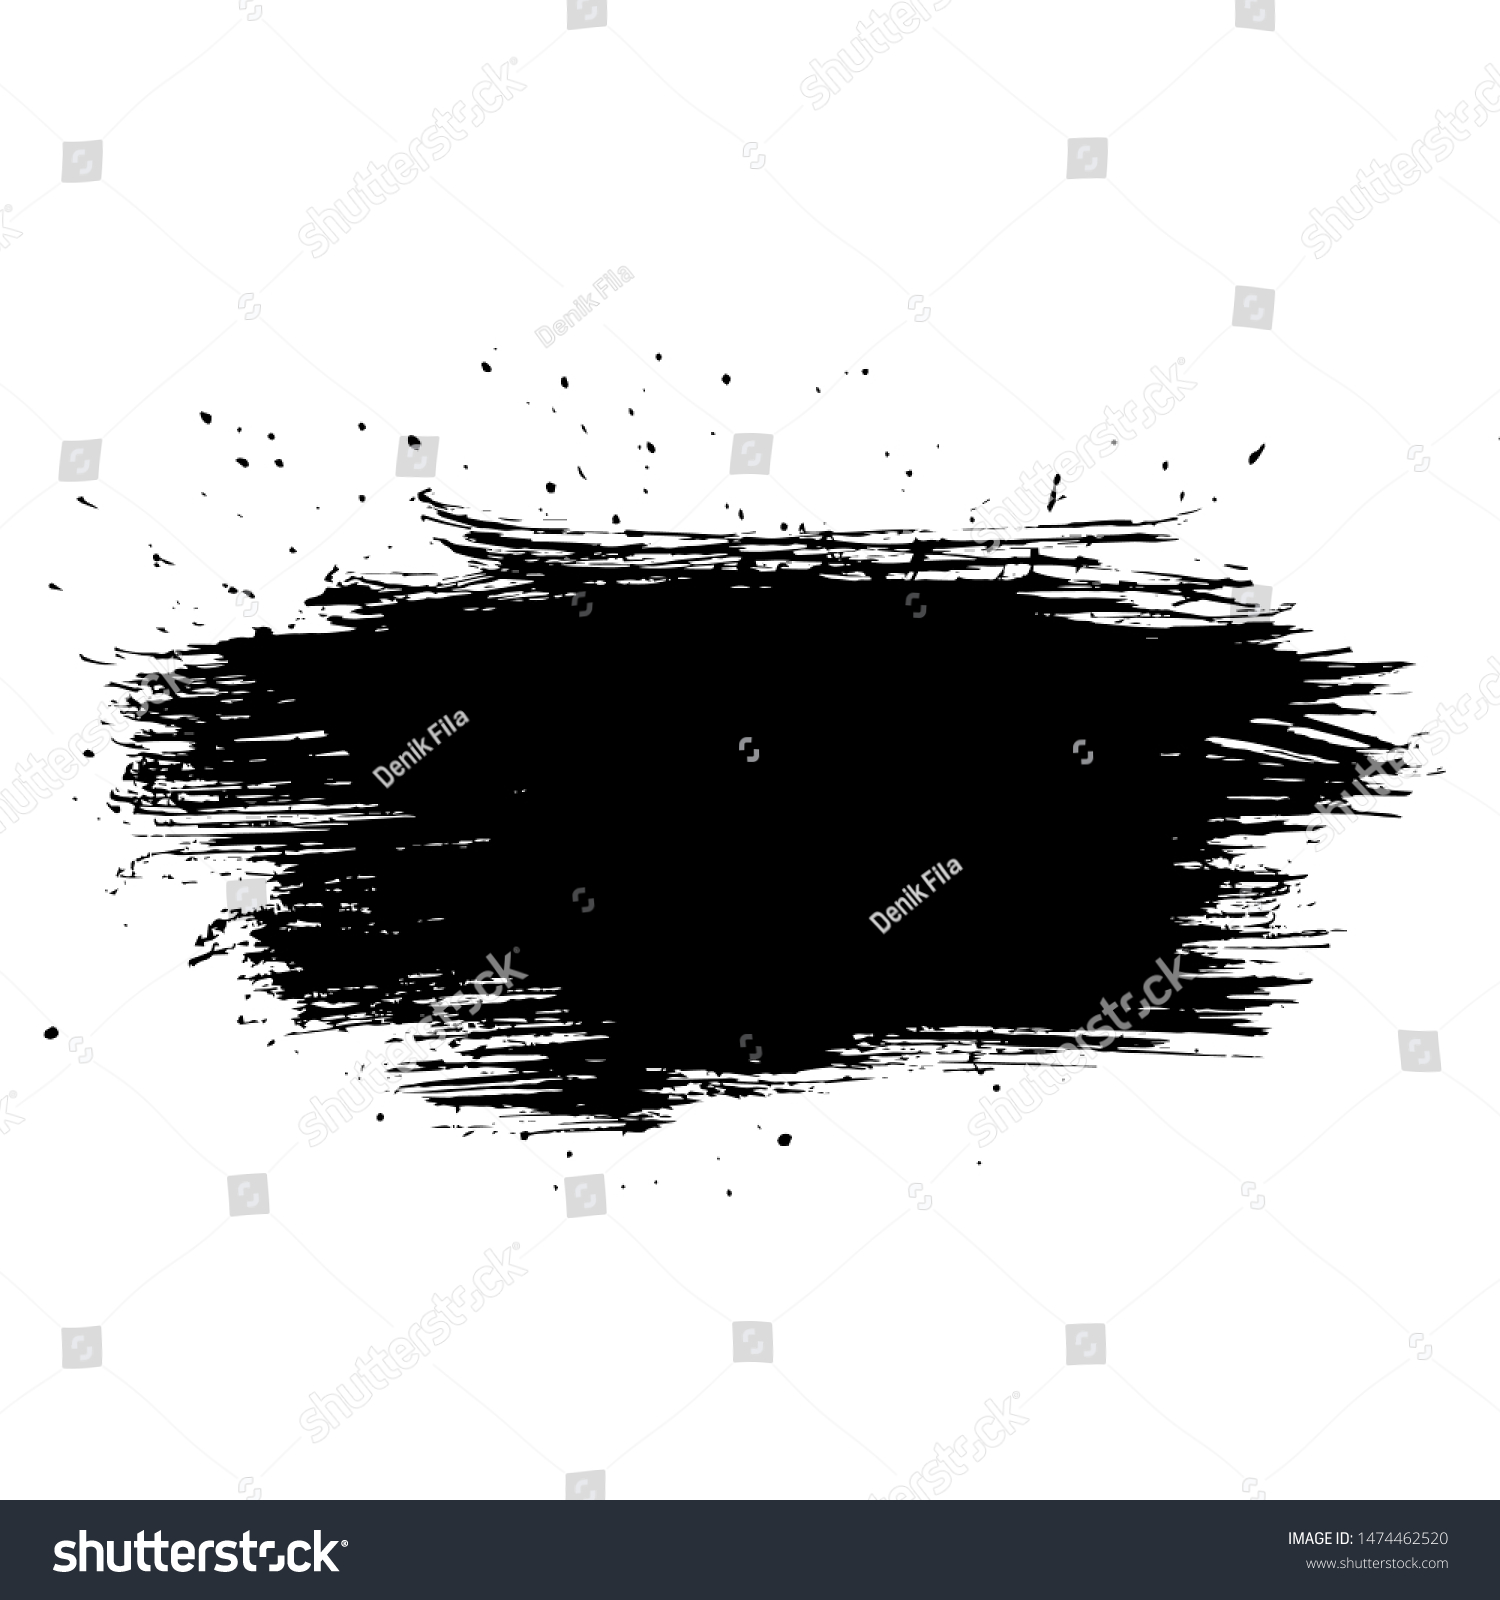 SVG of Ink Paintbrush Sprayed Splat Grunge Background Vector for Banner, Cover, Poster, Flyer, Brochure, Background, Logo or Wallpaper Element Design Download svg